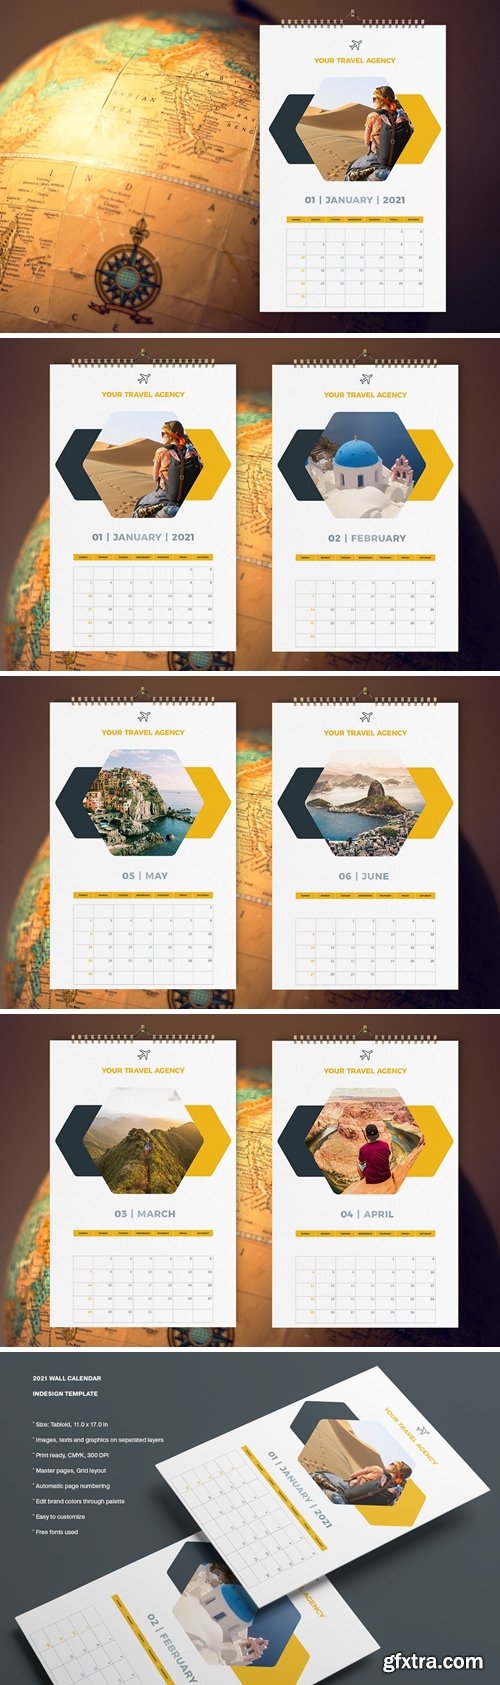 Travel Calendar 2021 Template